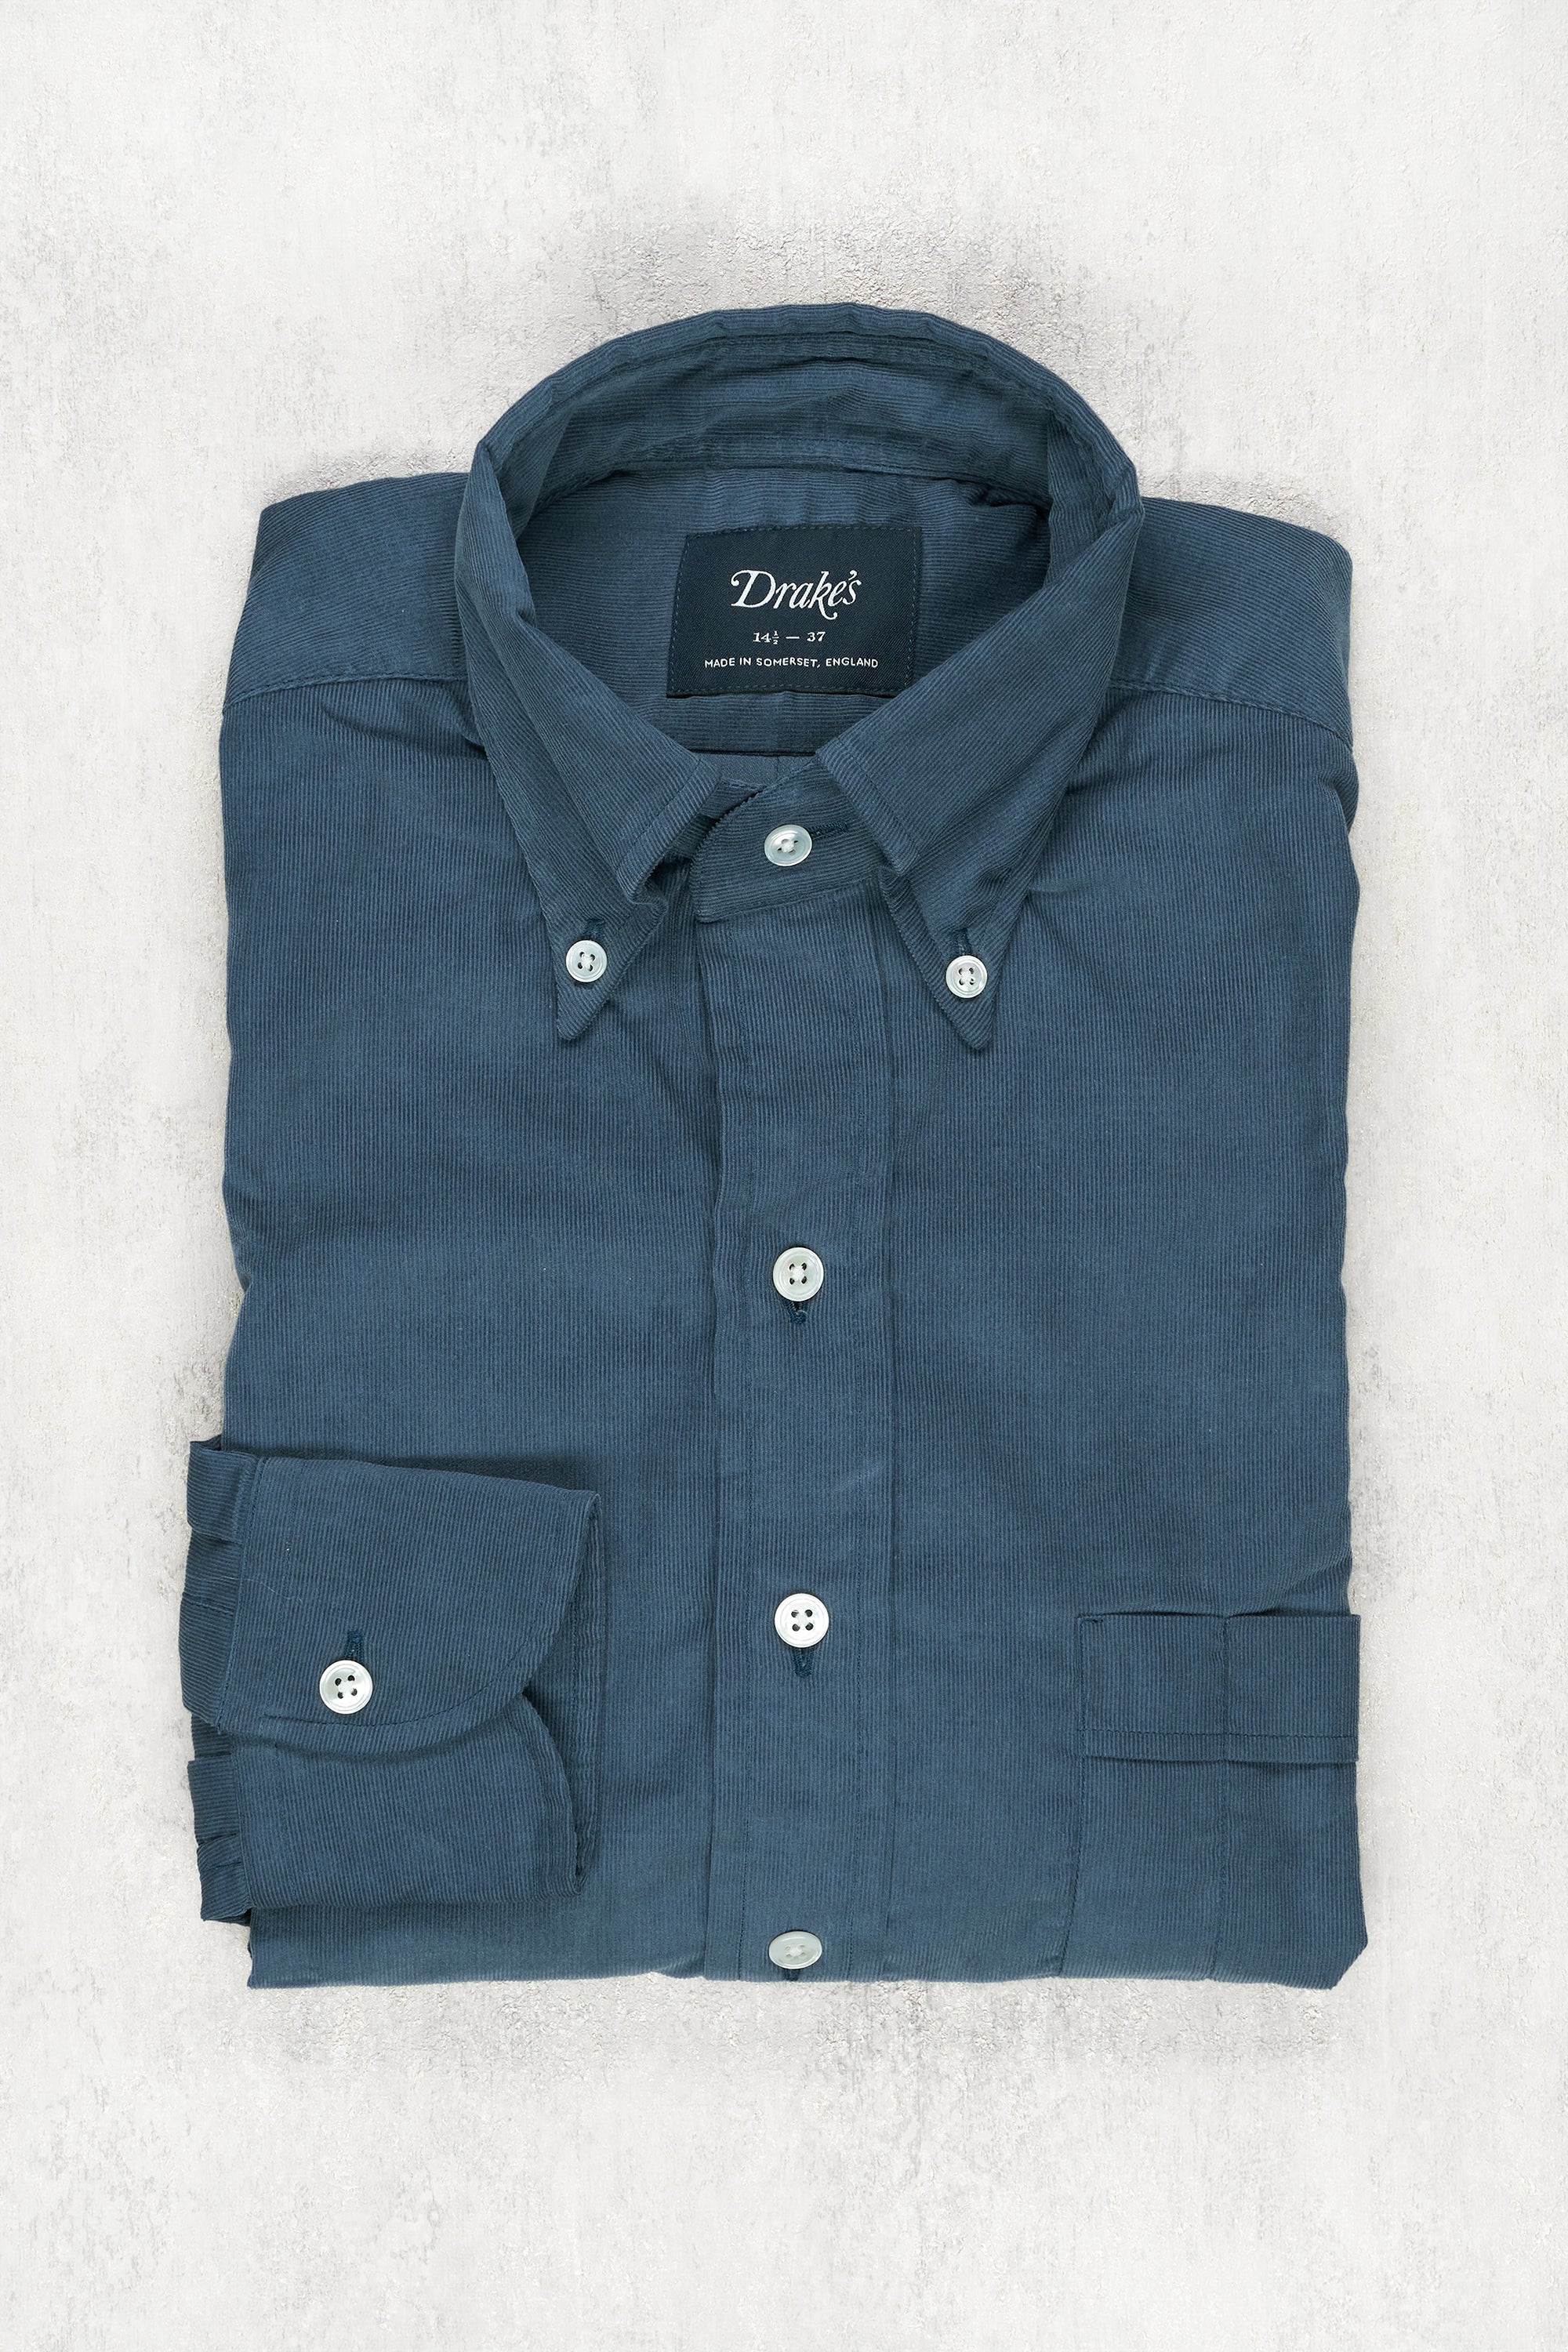 Drake's Blue Corduroy Button-down Shirt